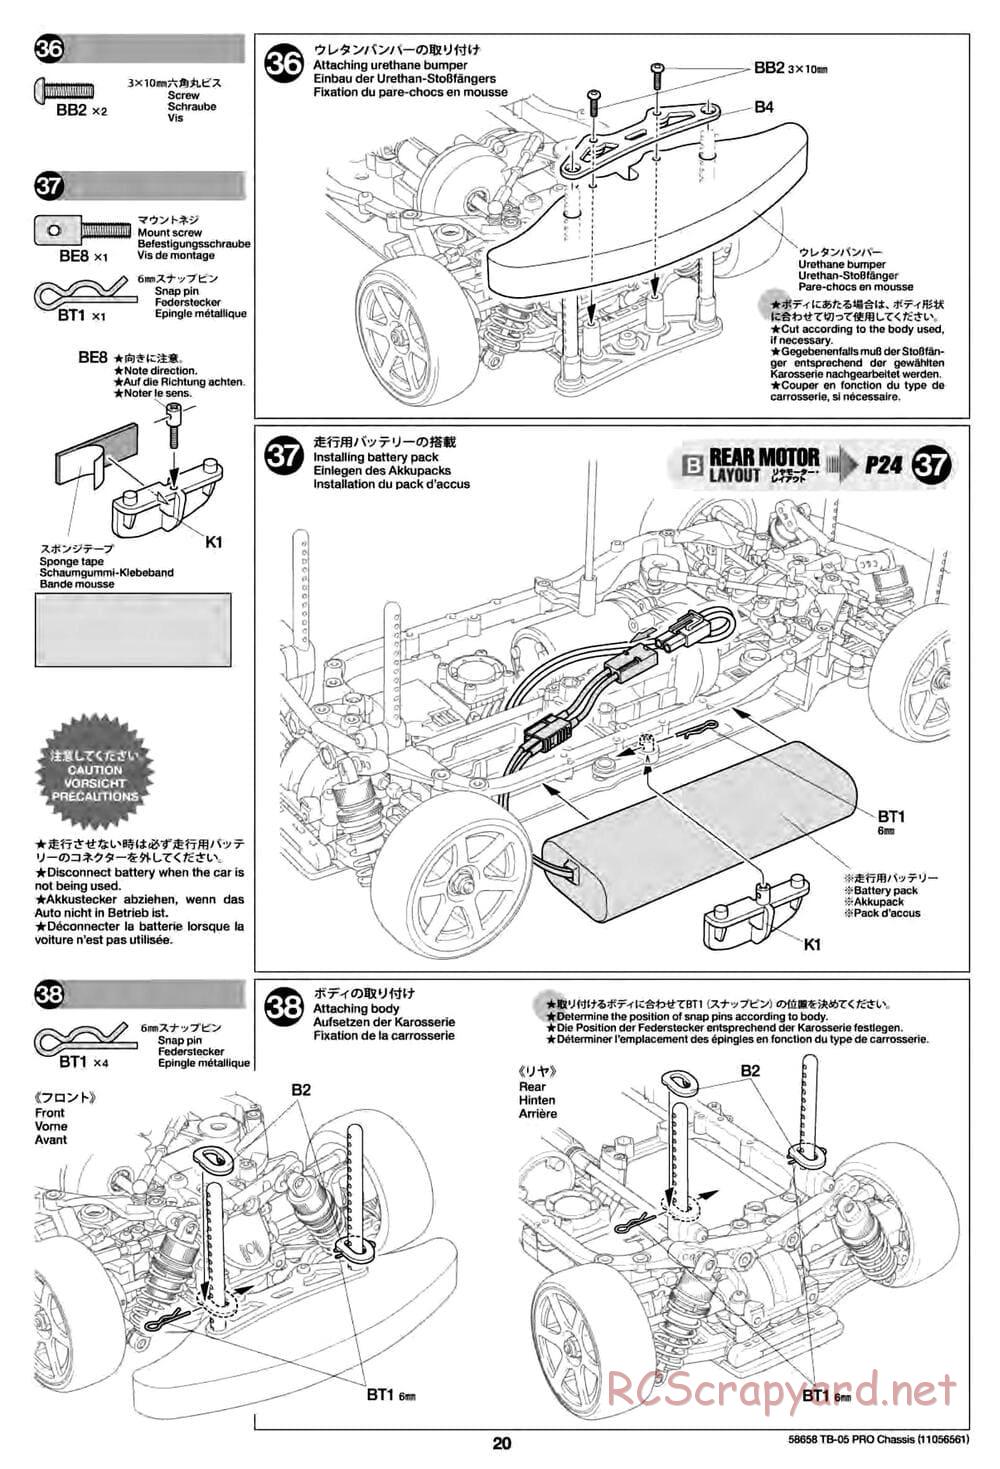 Tamiya - TB-05 Pro Chassis - Manual - Page 20